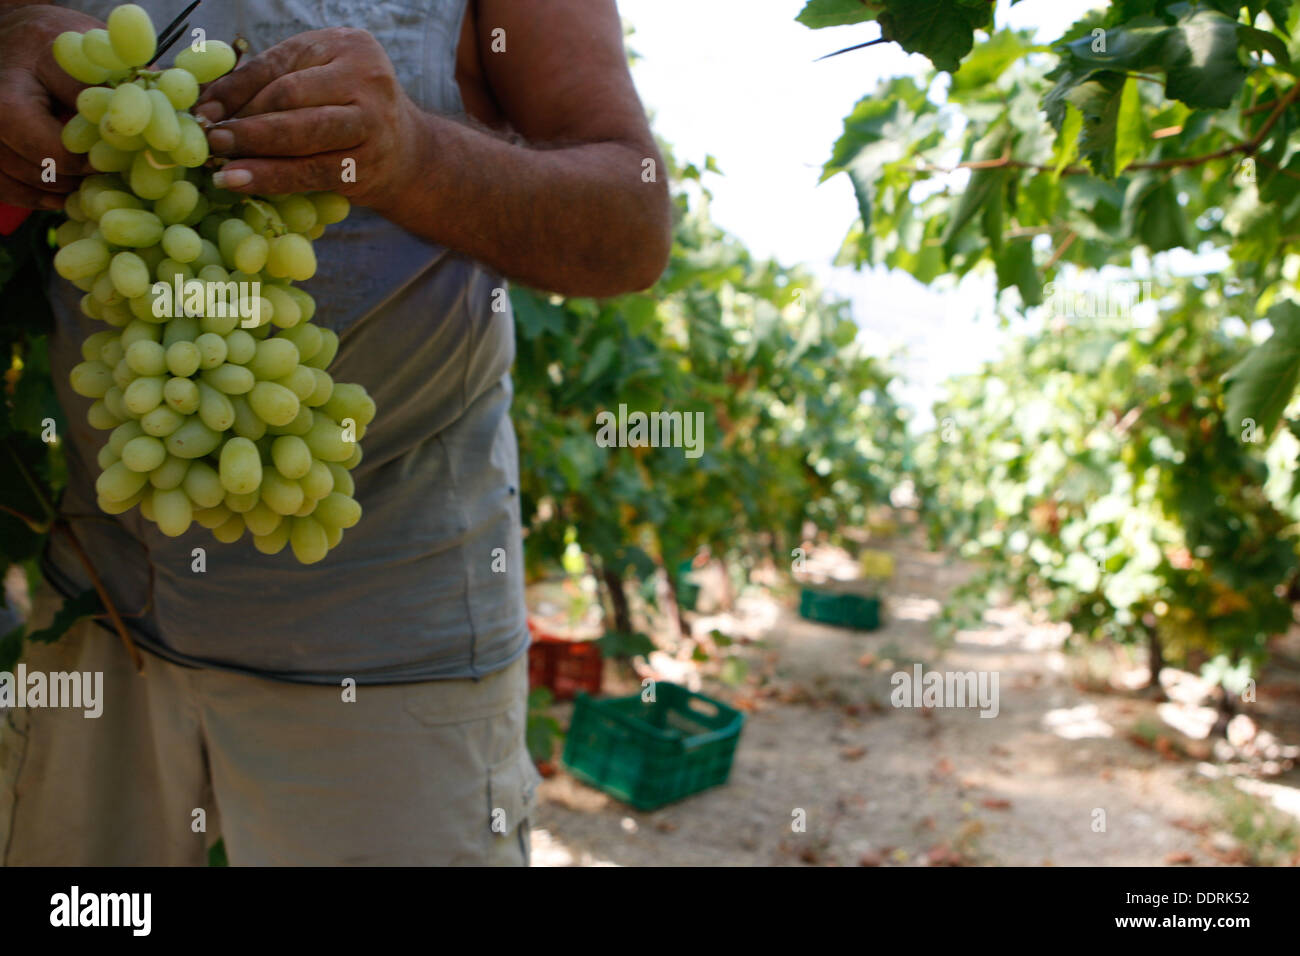 Les travailleurs étrangers, pour la plupart des albanais et roumains, recueillir les raisins des champs. La région de Némée. dans le Péloponnèse, a une tradition viticole, de l'antiquité et le vin mémorable d'Fliasion à l'Aghiorghitiko exquis, le vin grec qui a gagné l'admiration de tous les amateurs de vin à travers le monde. Banque D'Images